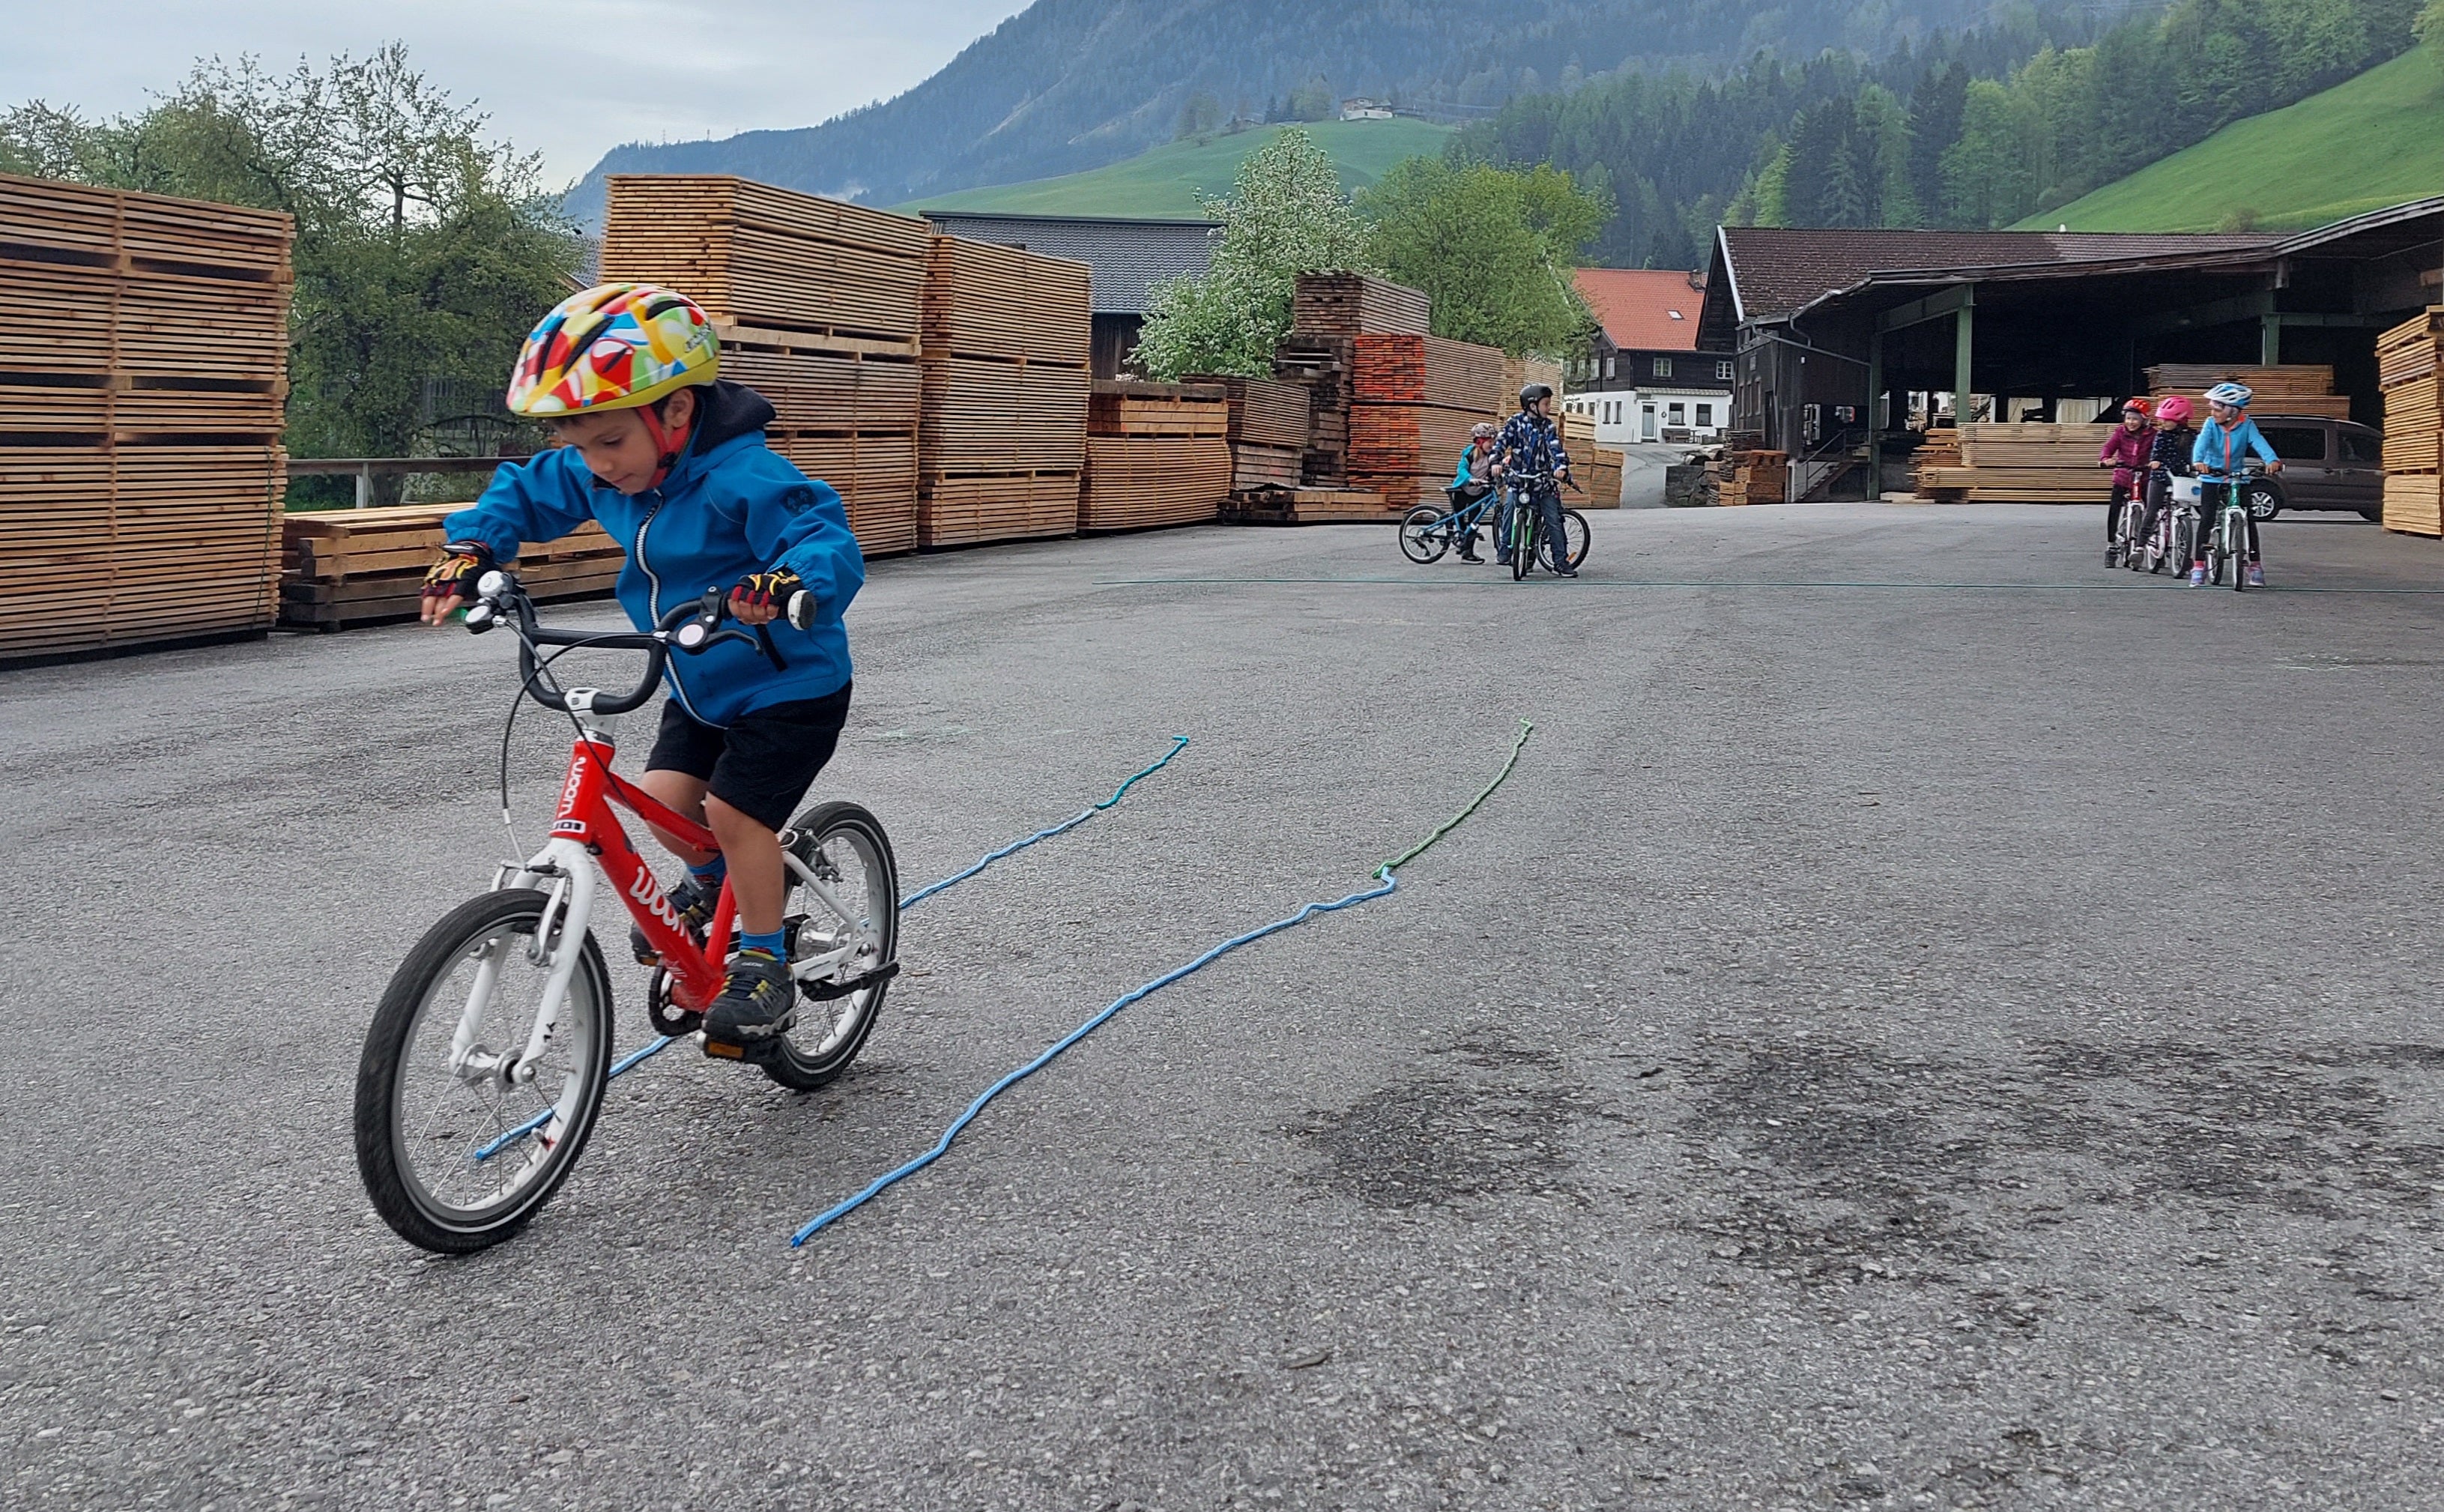 En liten pojke kör på en woom-cykel rakt fram mellan två snören på marken.